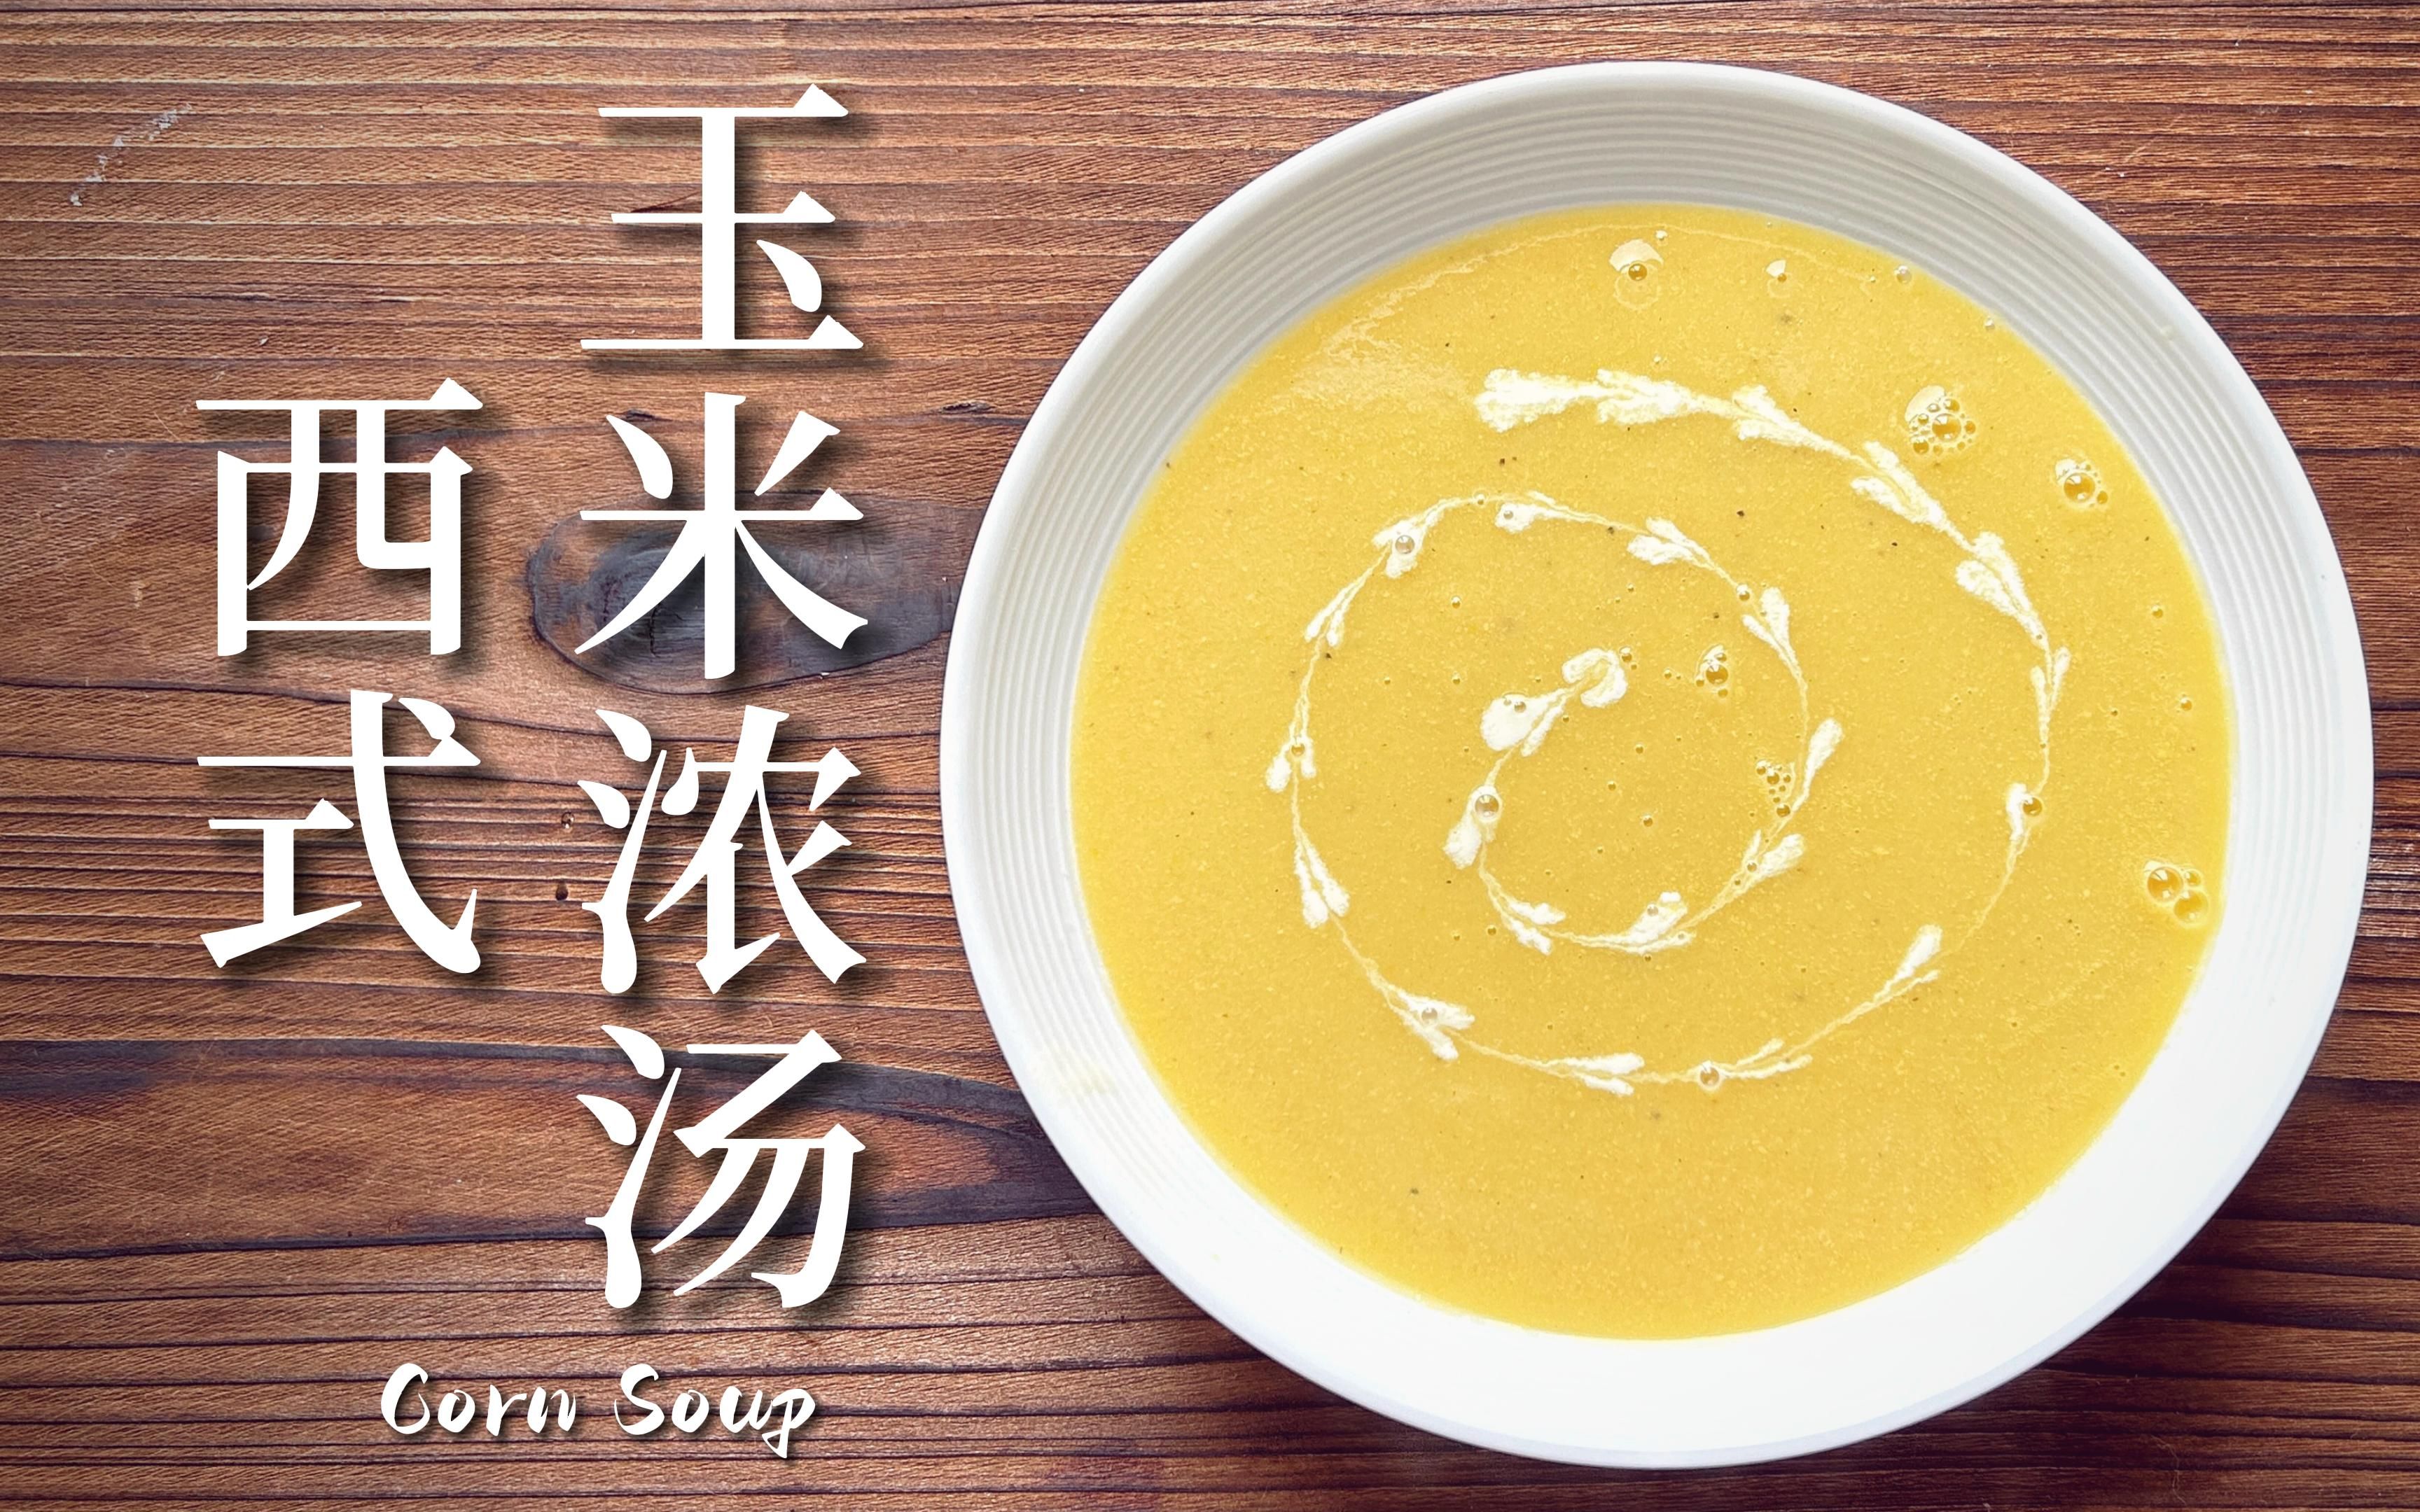 香甜顺滑的西式玉米浓汤,每一口都喝得到玉米的清甜,简单的西式浓汤